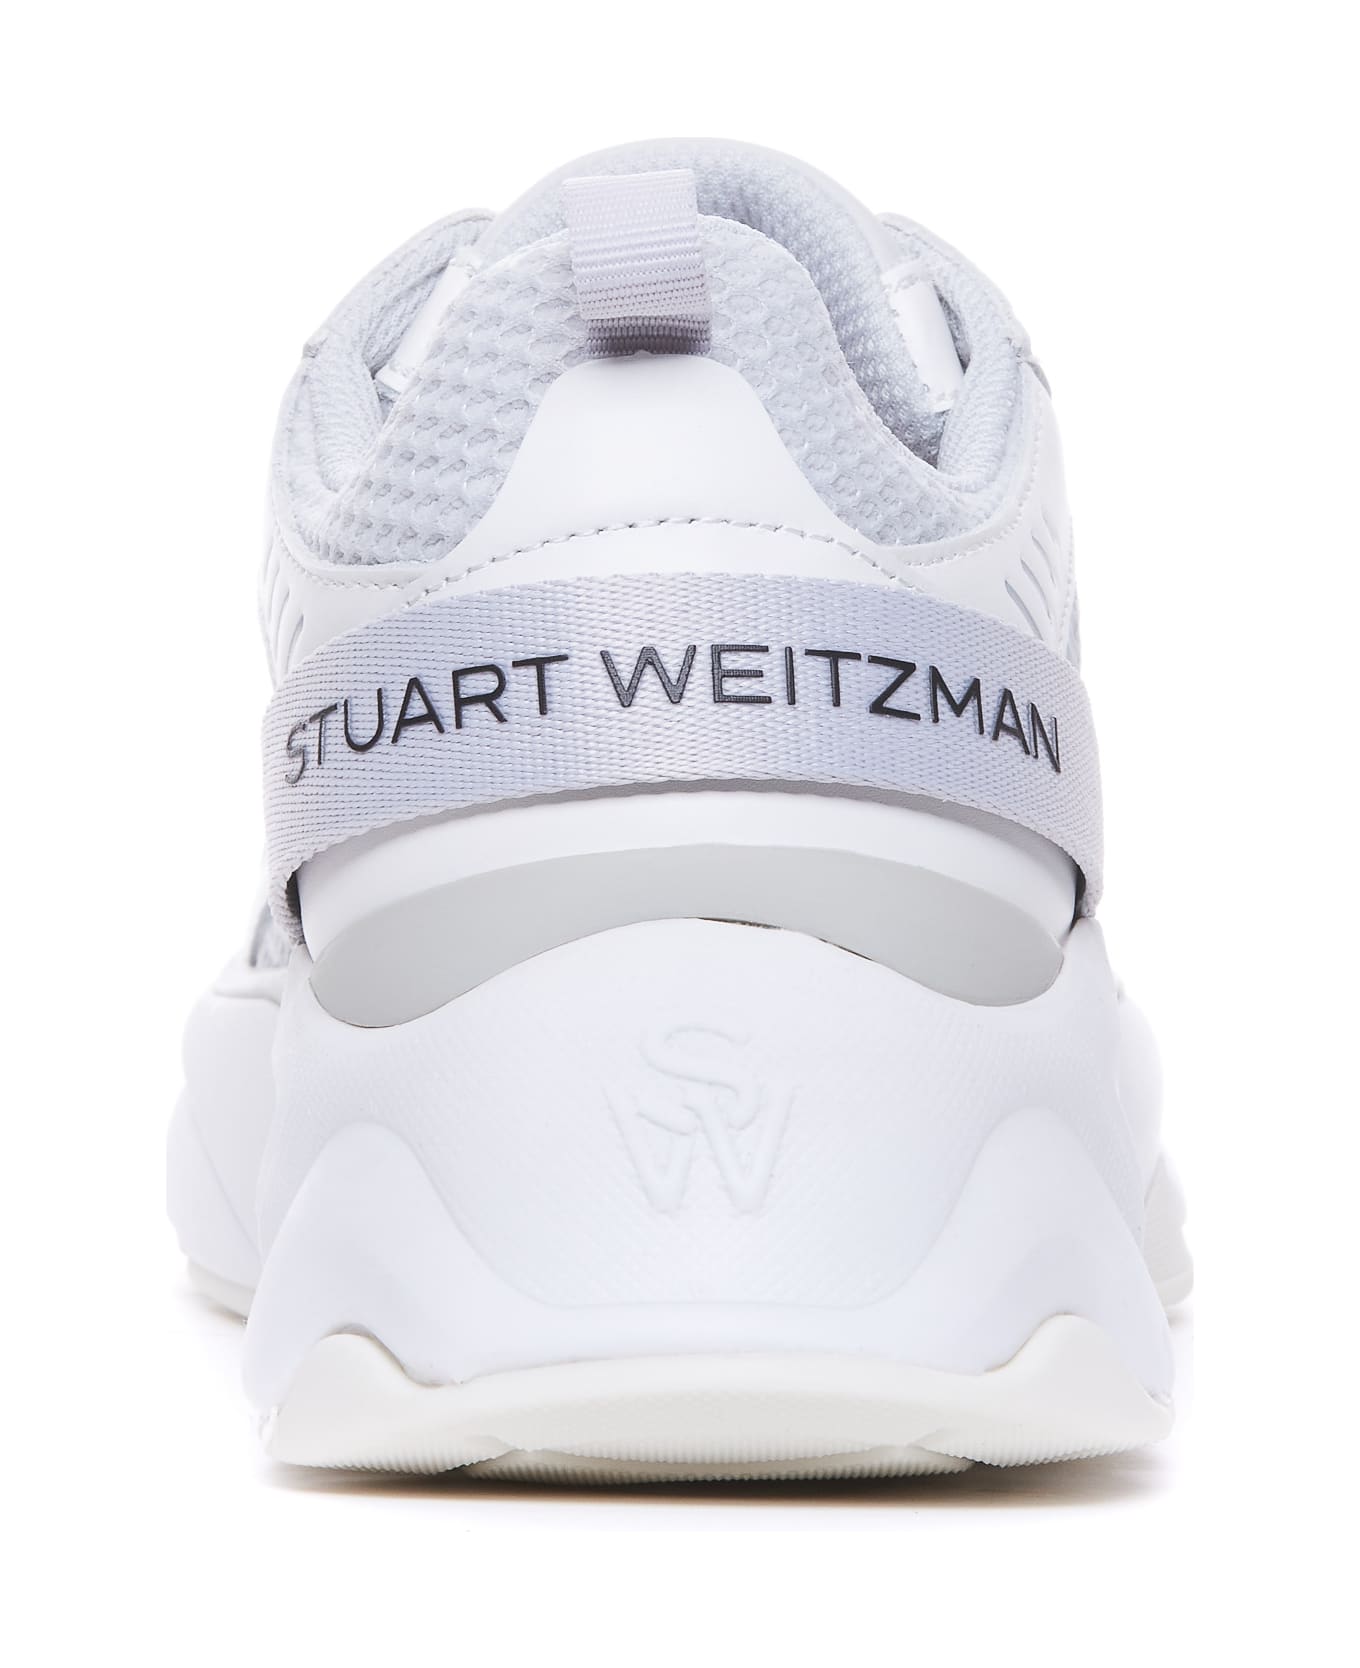 Stuart Weitzman Sw Trainer Sneakers - Grey